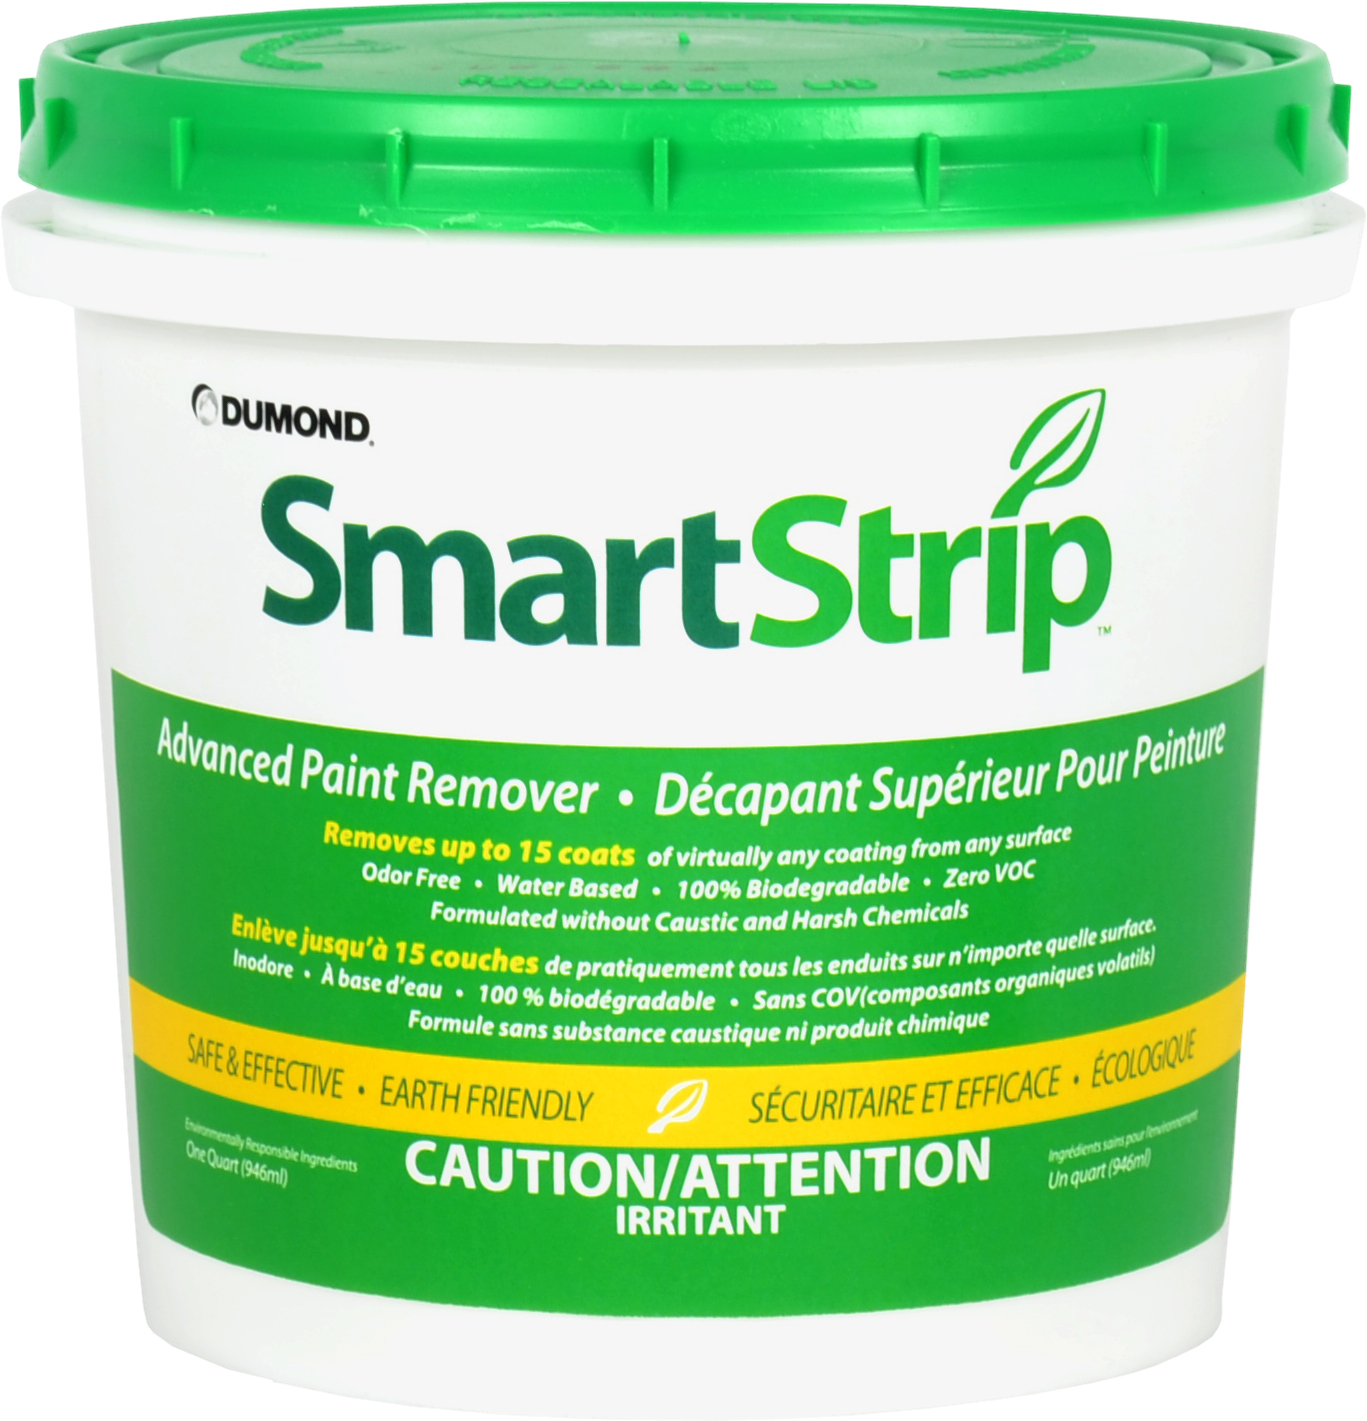 smart strip pro paint remover